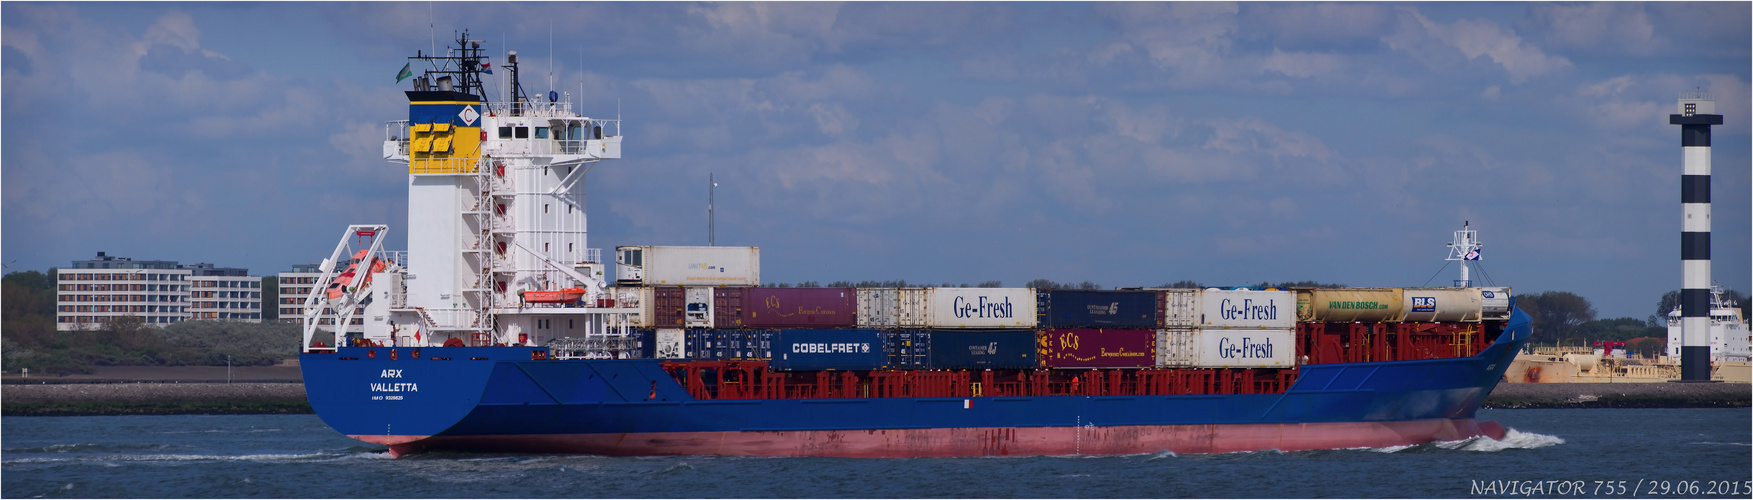 ARX / Container ship / Rotterdam / Bitte scrollen!